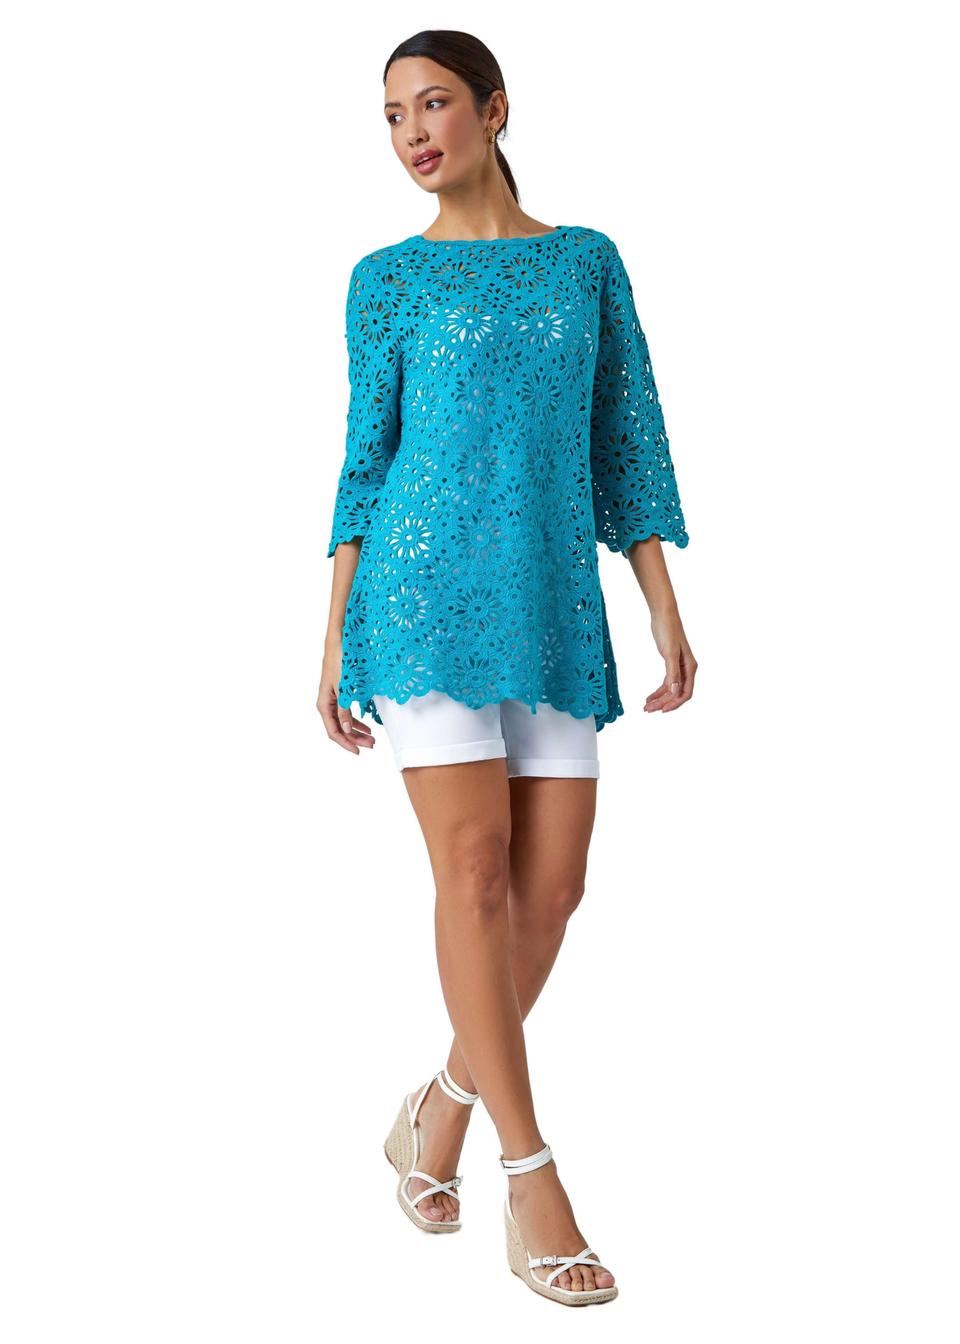 Turquoise Floral Cotton Crochet Top